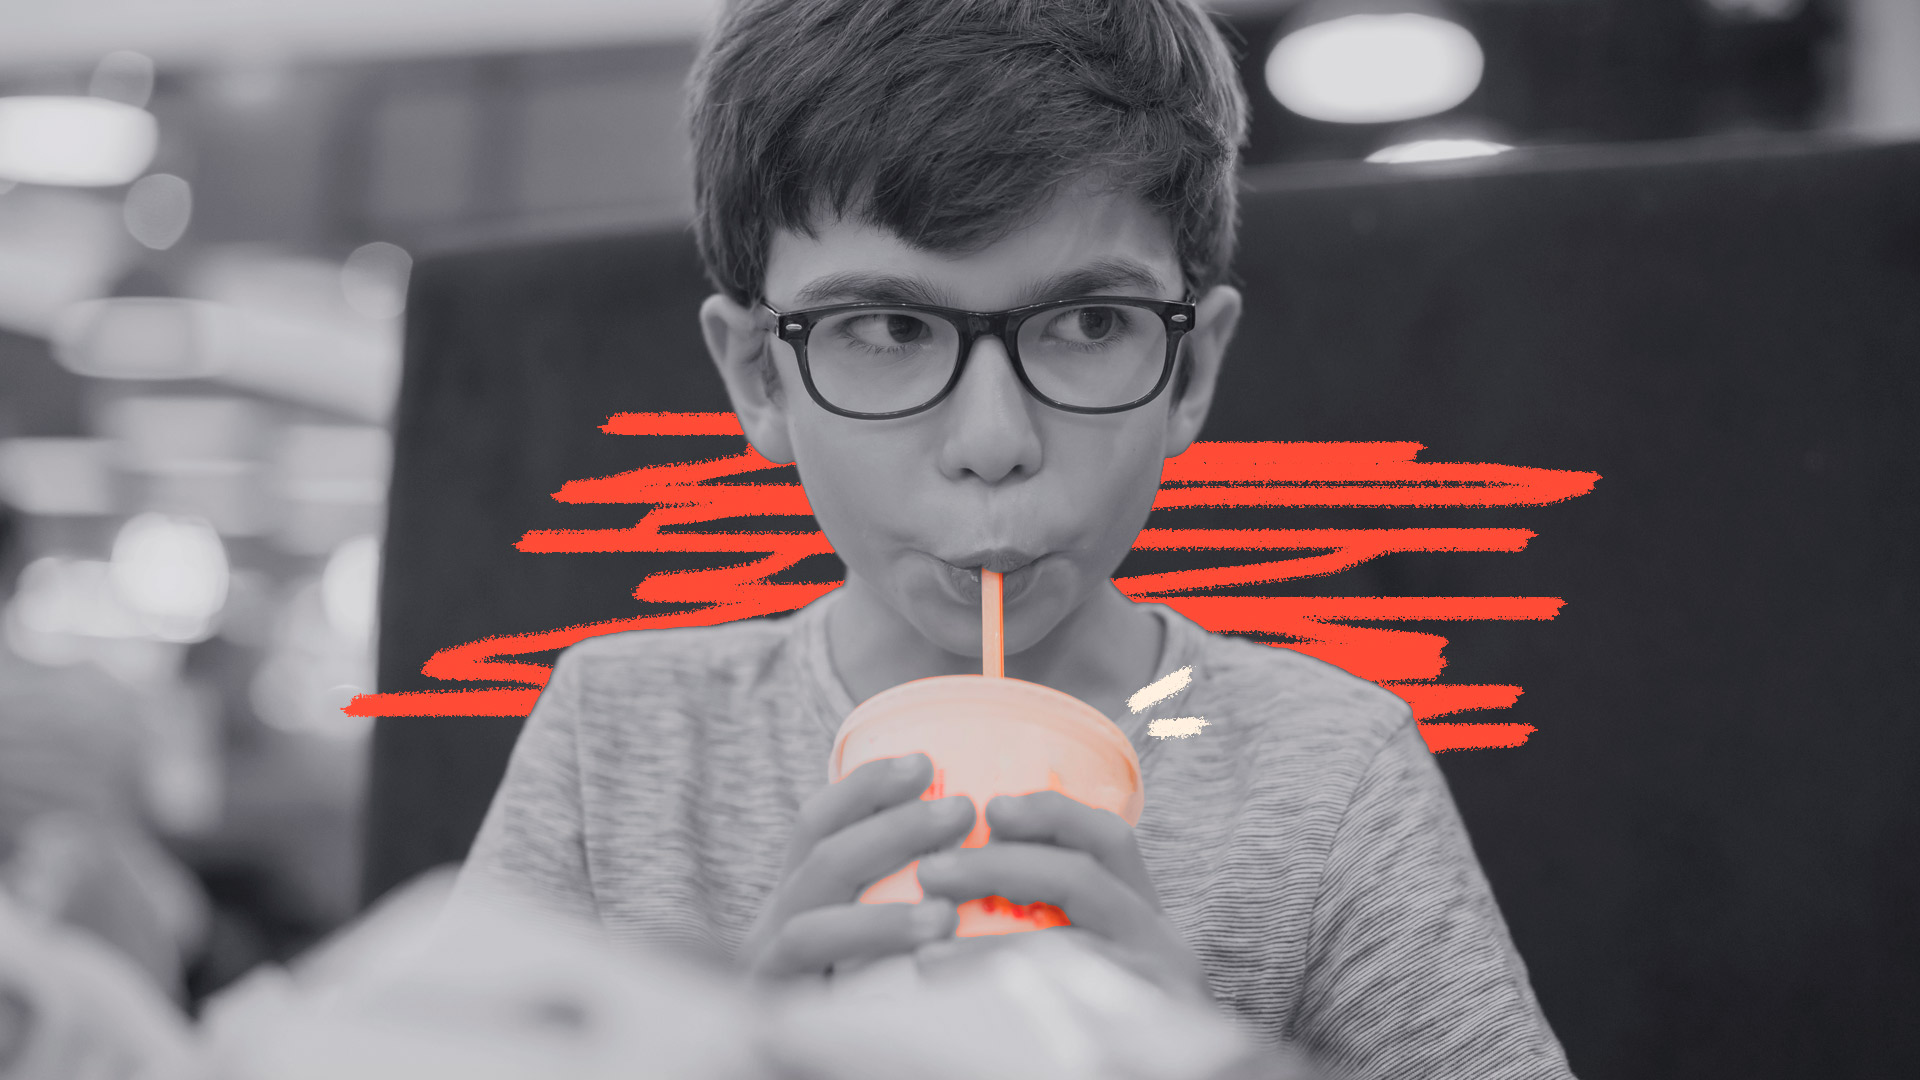 Imagem em preto e branco de um menino, de óculos, tomando uma bebida em um copo plástico com canudinho.